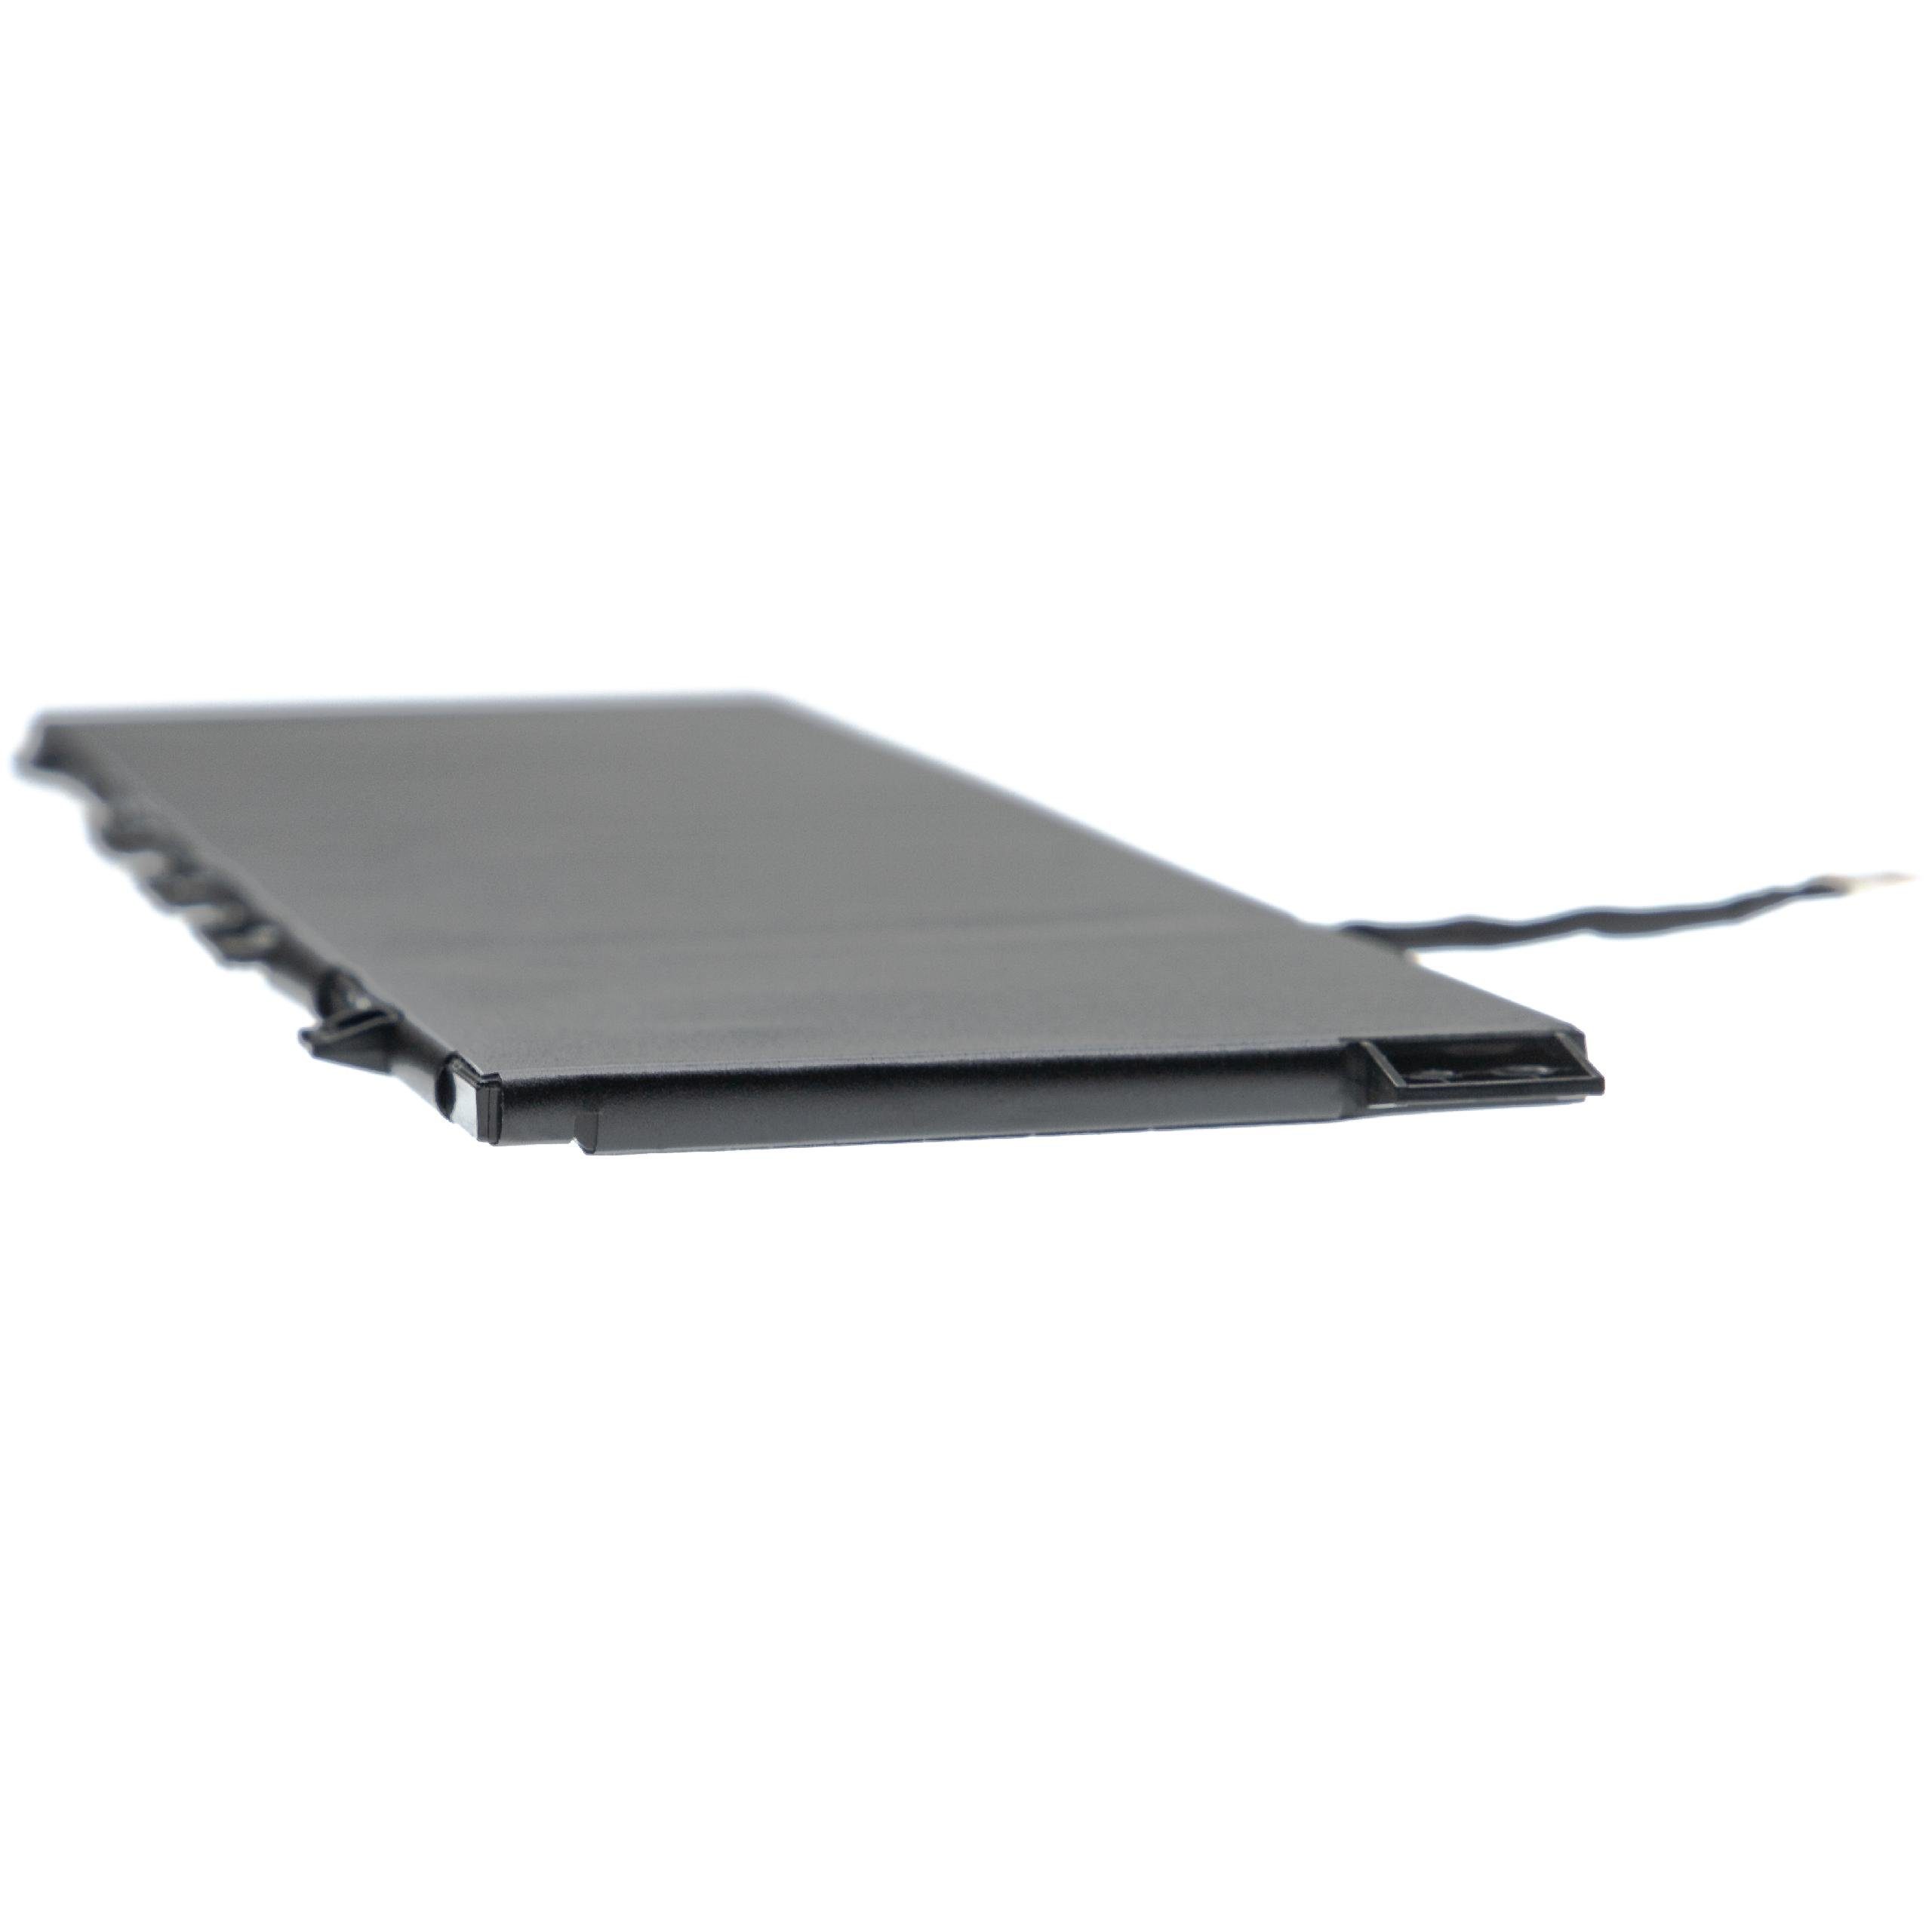 Originalteilebezeichnung Notebook mAh / für HP Ersatz Laptop-Akku für 3400 / Netbook TPN-W133, Notebook Baugleiche TPN-W136 vhbw Li-Polymer) (3400mAh, 15,4V, Notebook